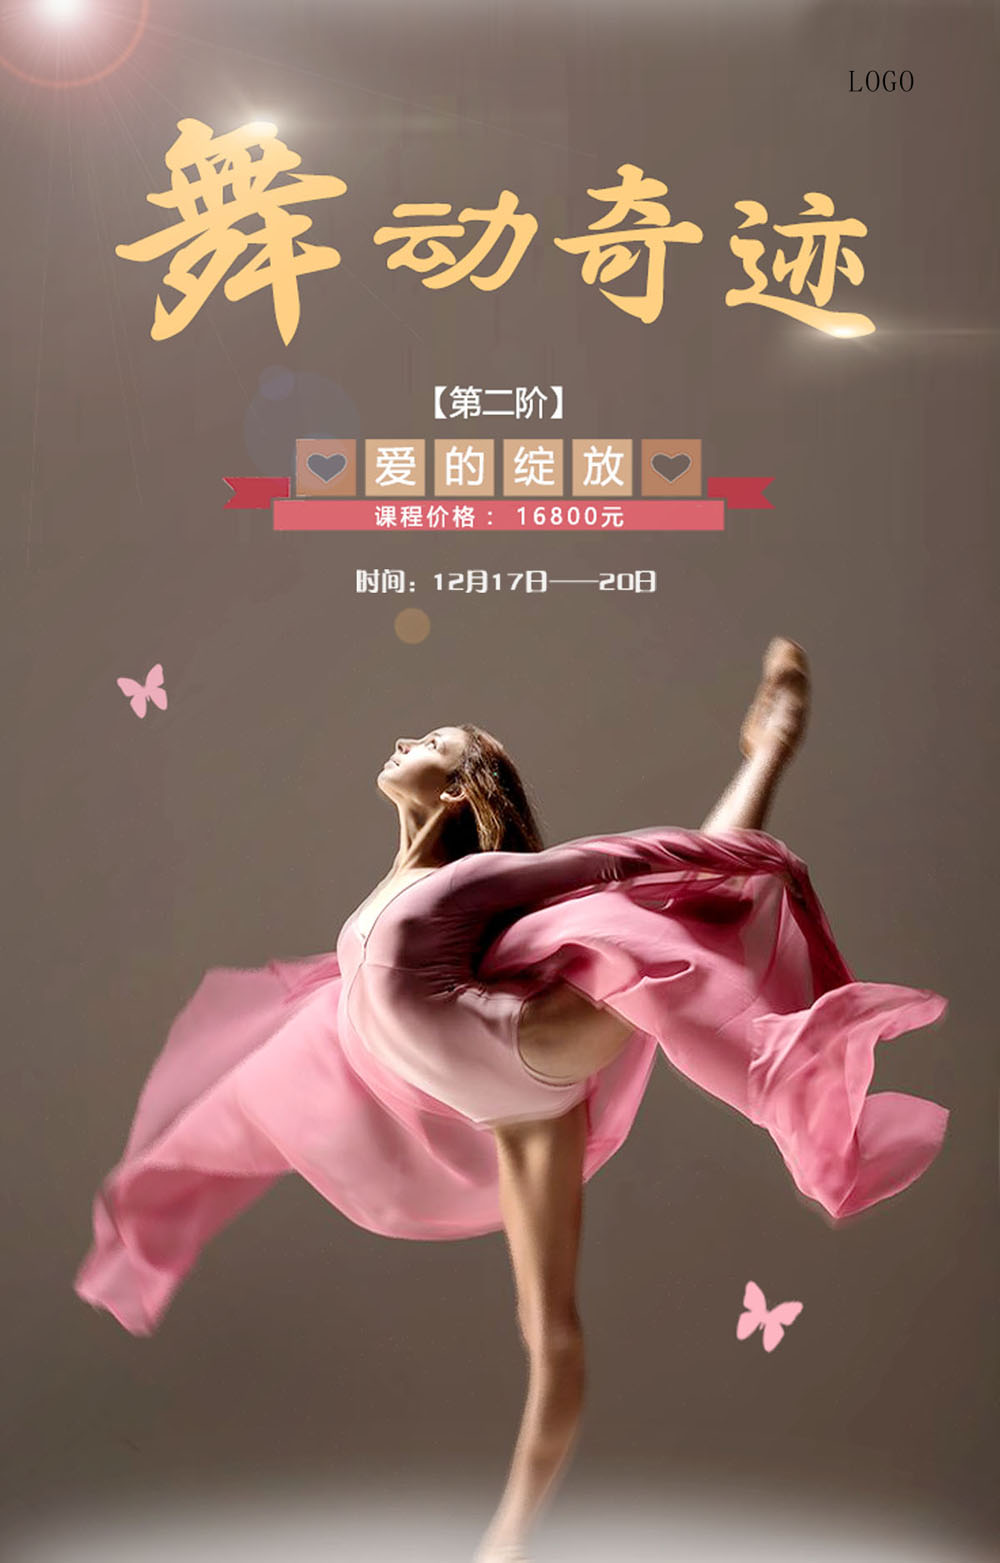 754海报印制展板写真喷绘636舞动奇迹舞蹈培训班中心招生宣传海报